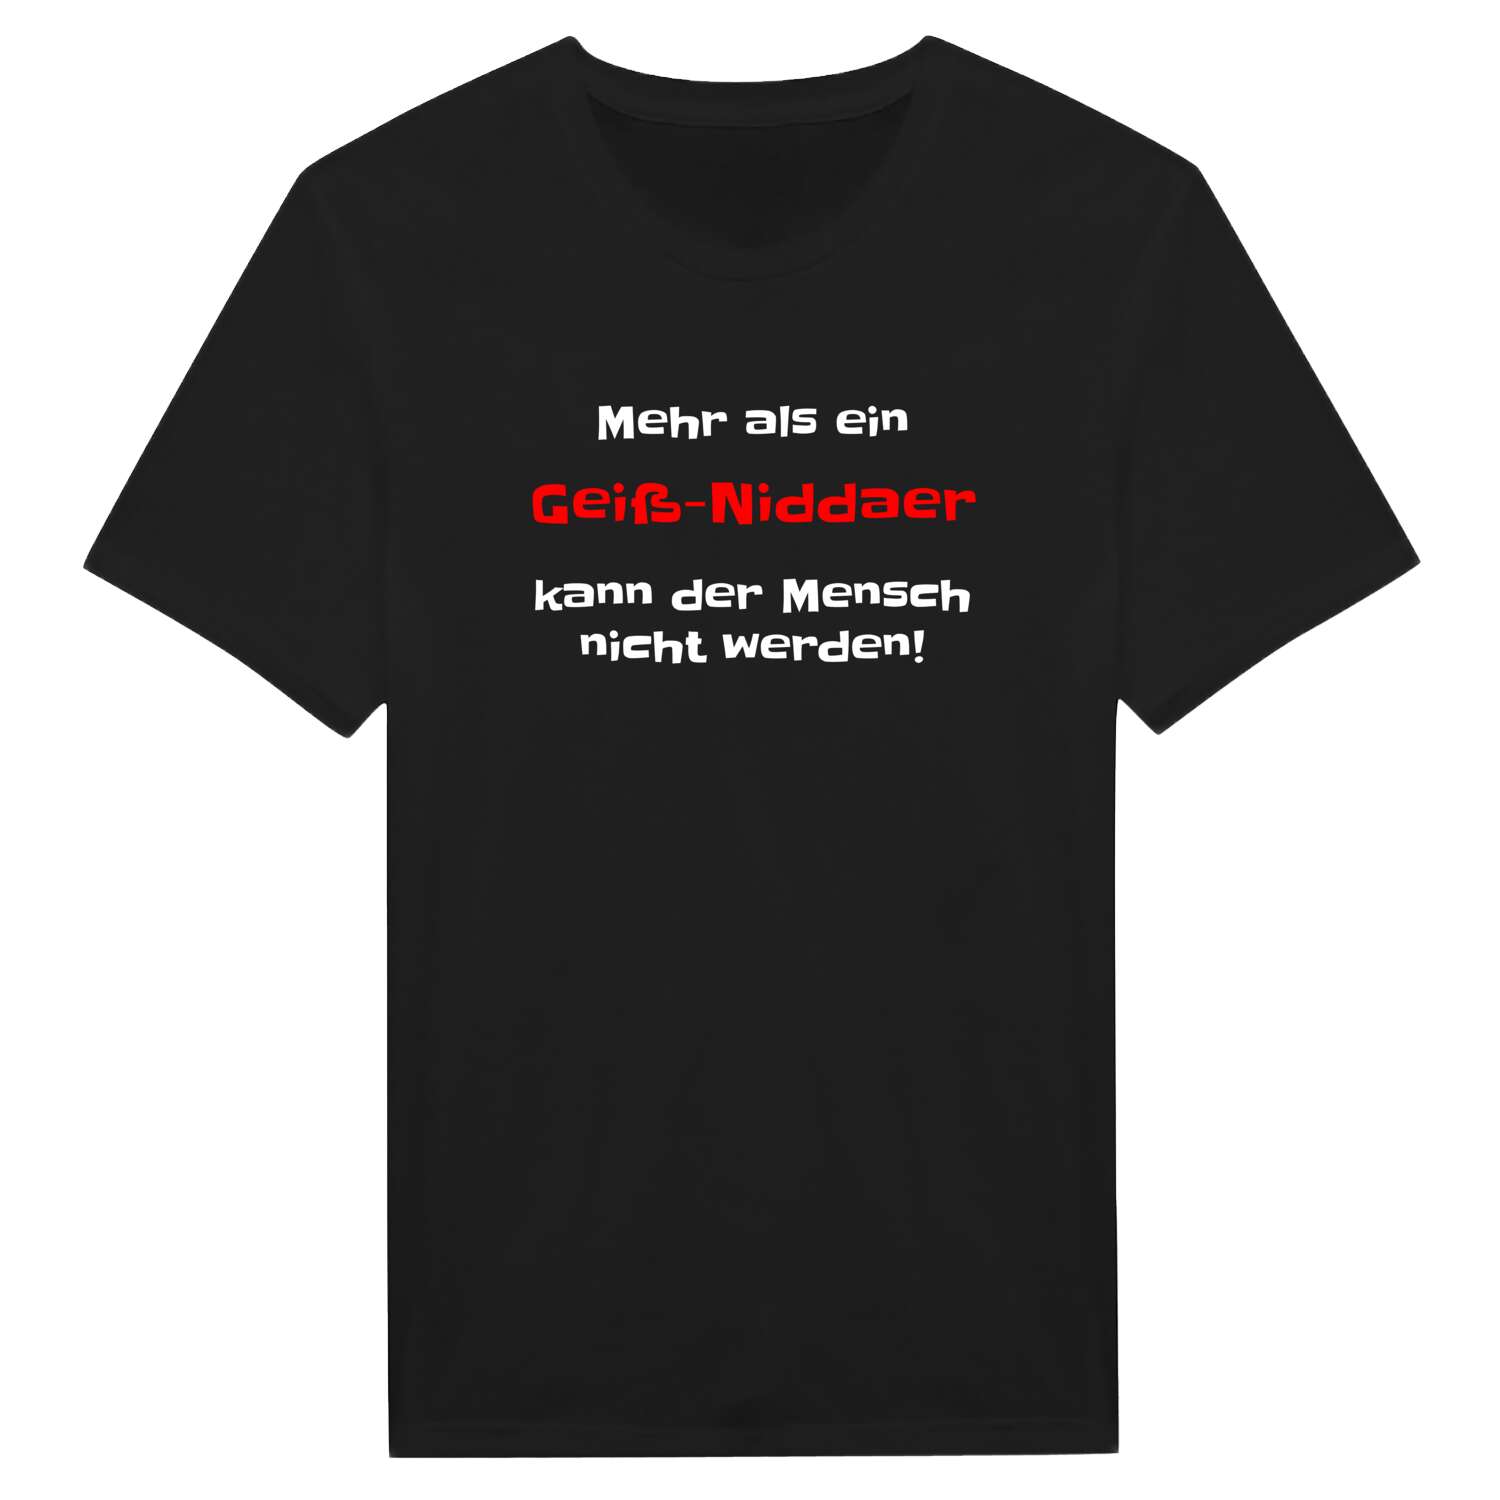 Geiß-Nidda T-Shirt »Mehr als ein«